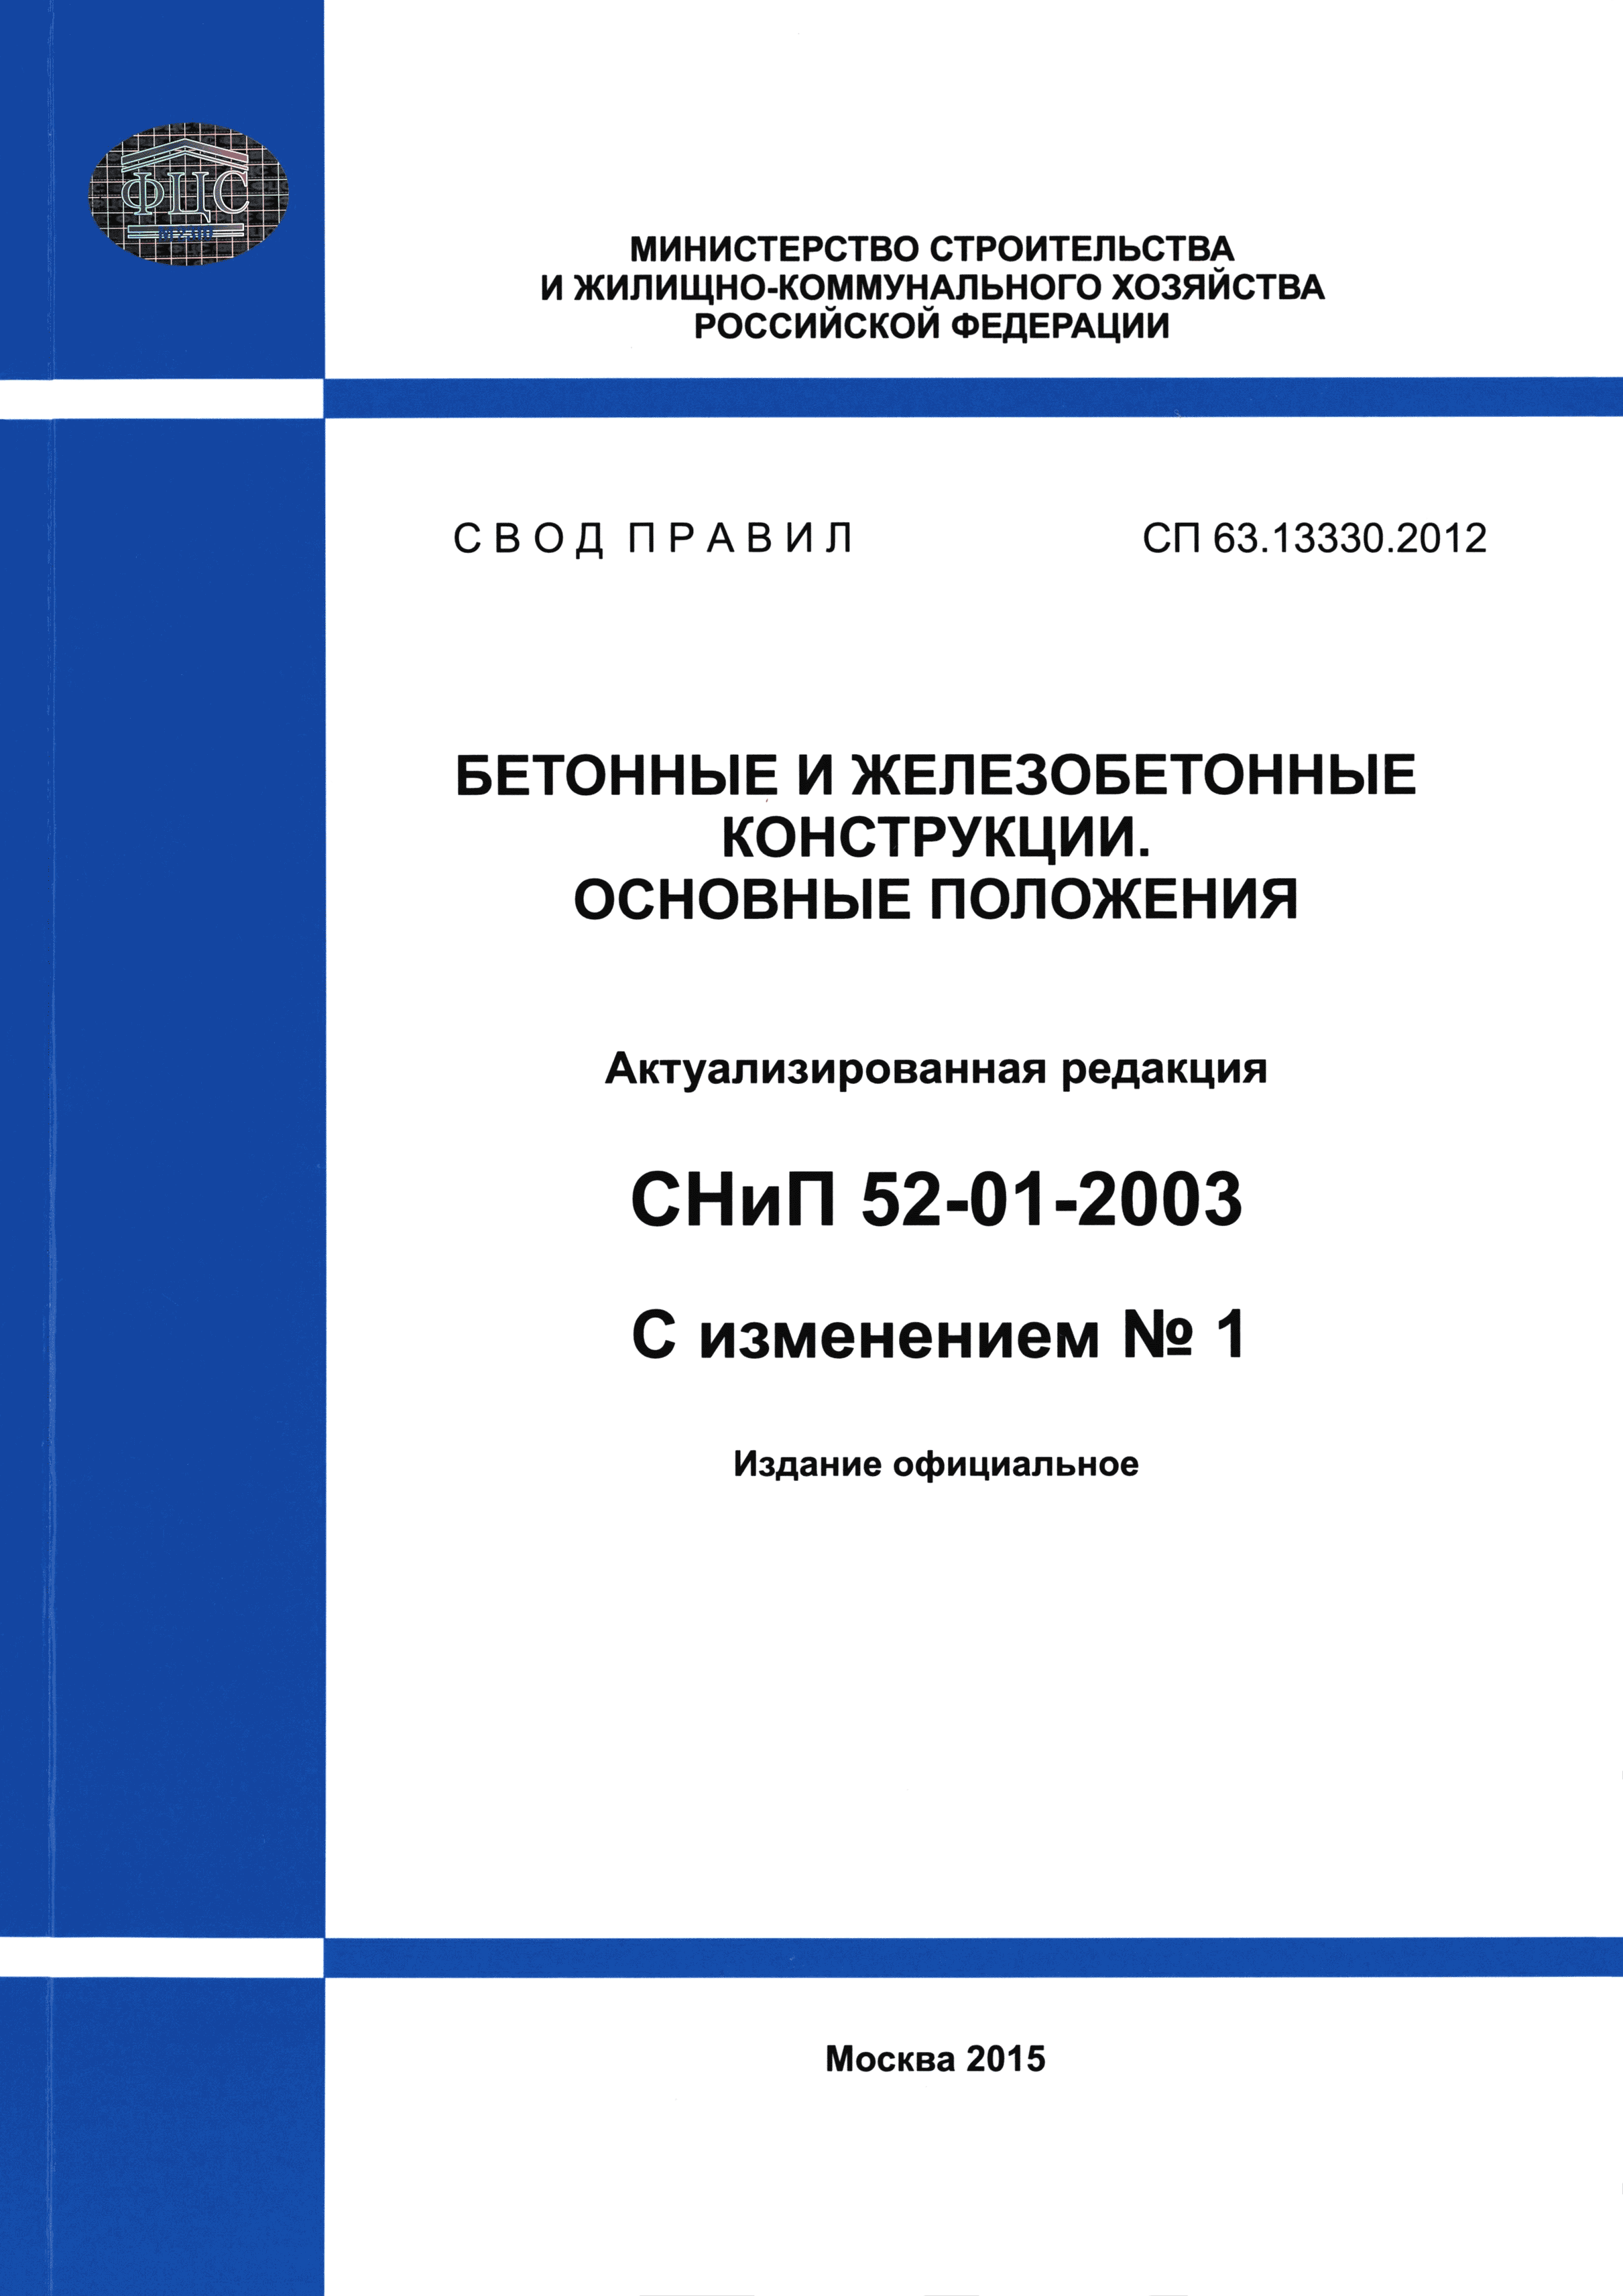 СП 63.13330.2012